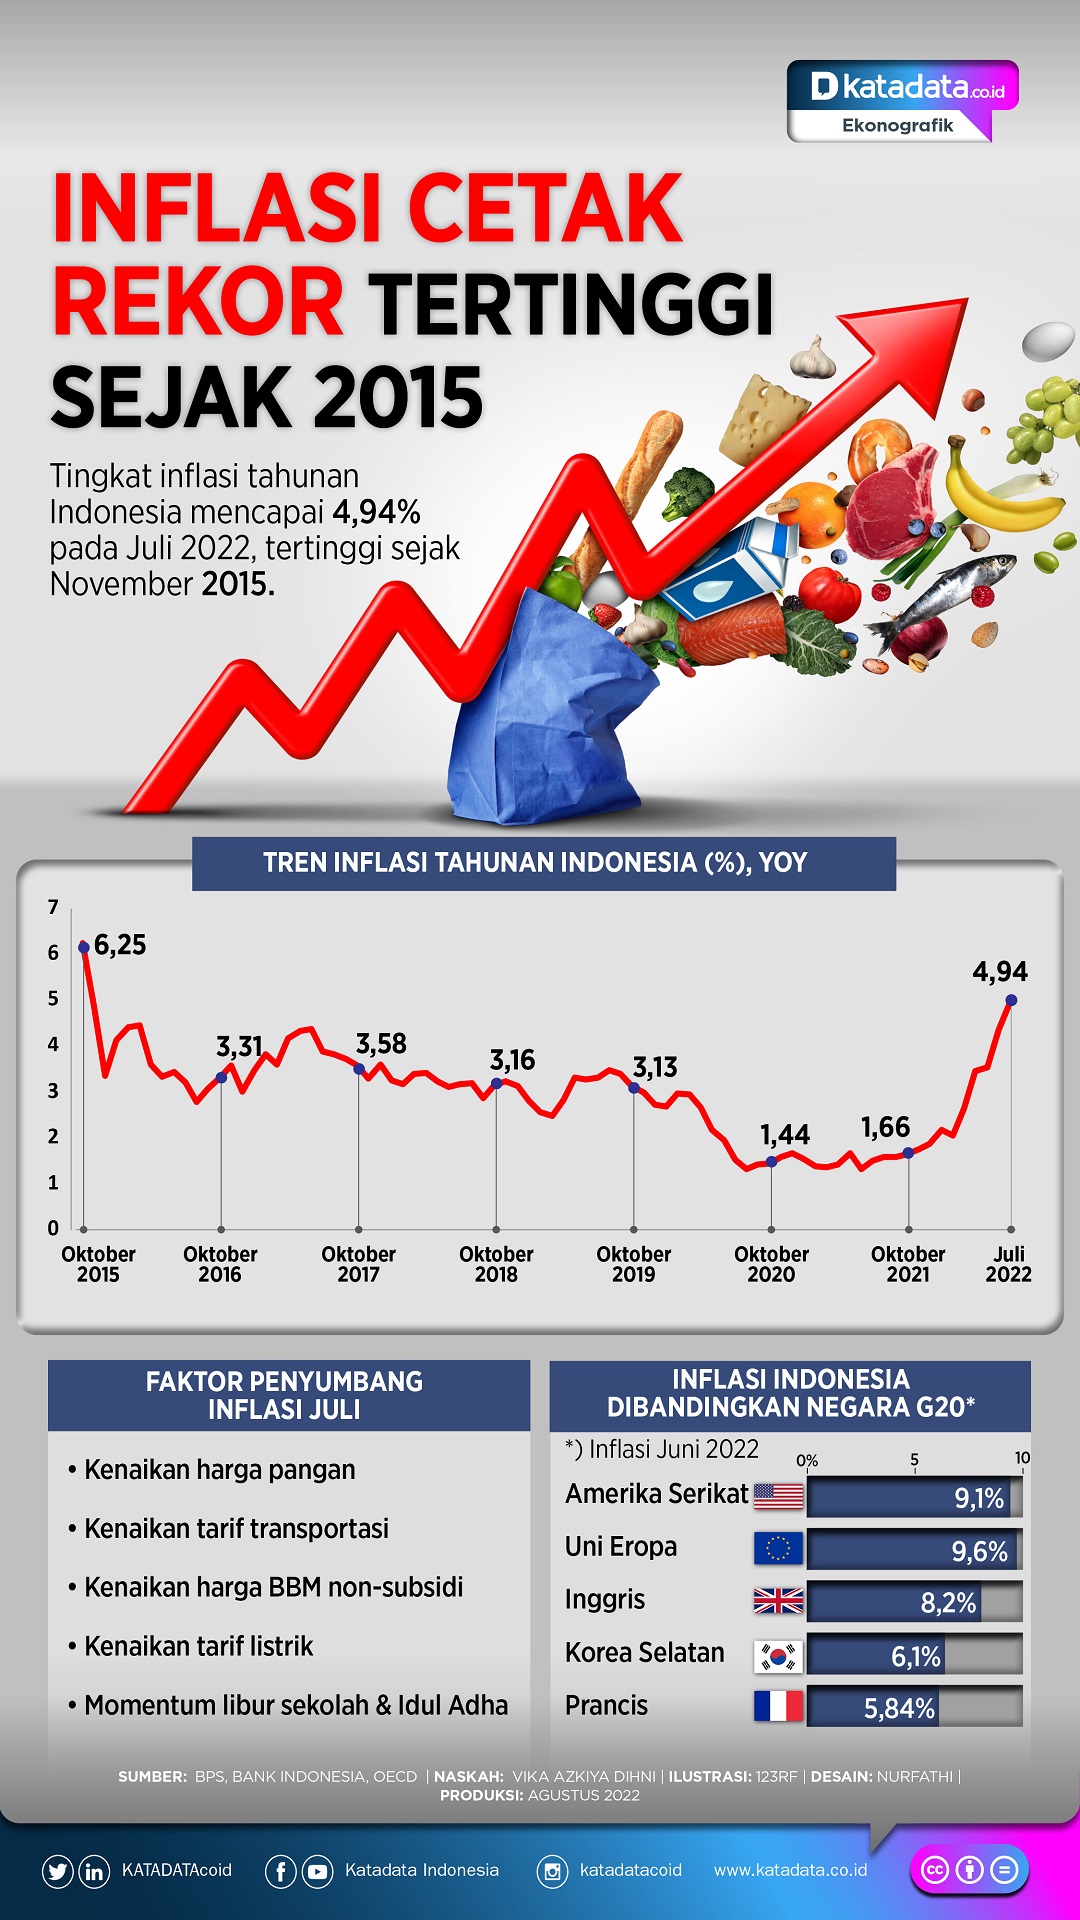 Infografik_Inflasi cetak rekor tertinggi sejak 2015